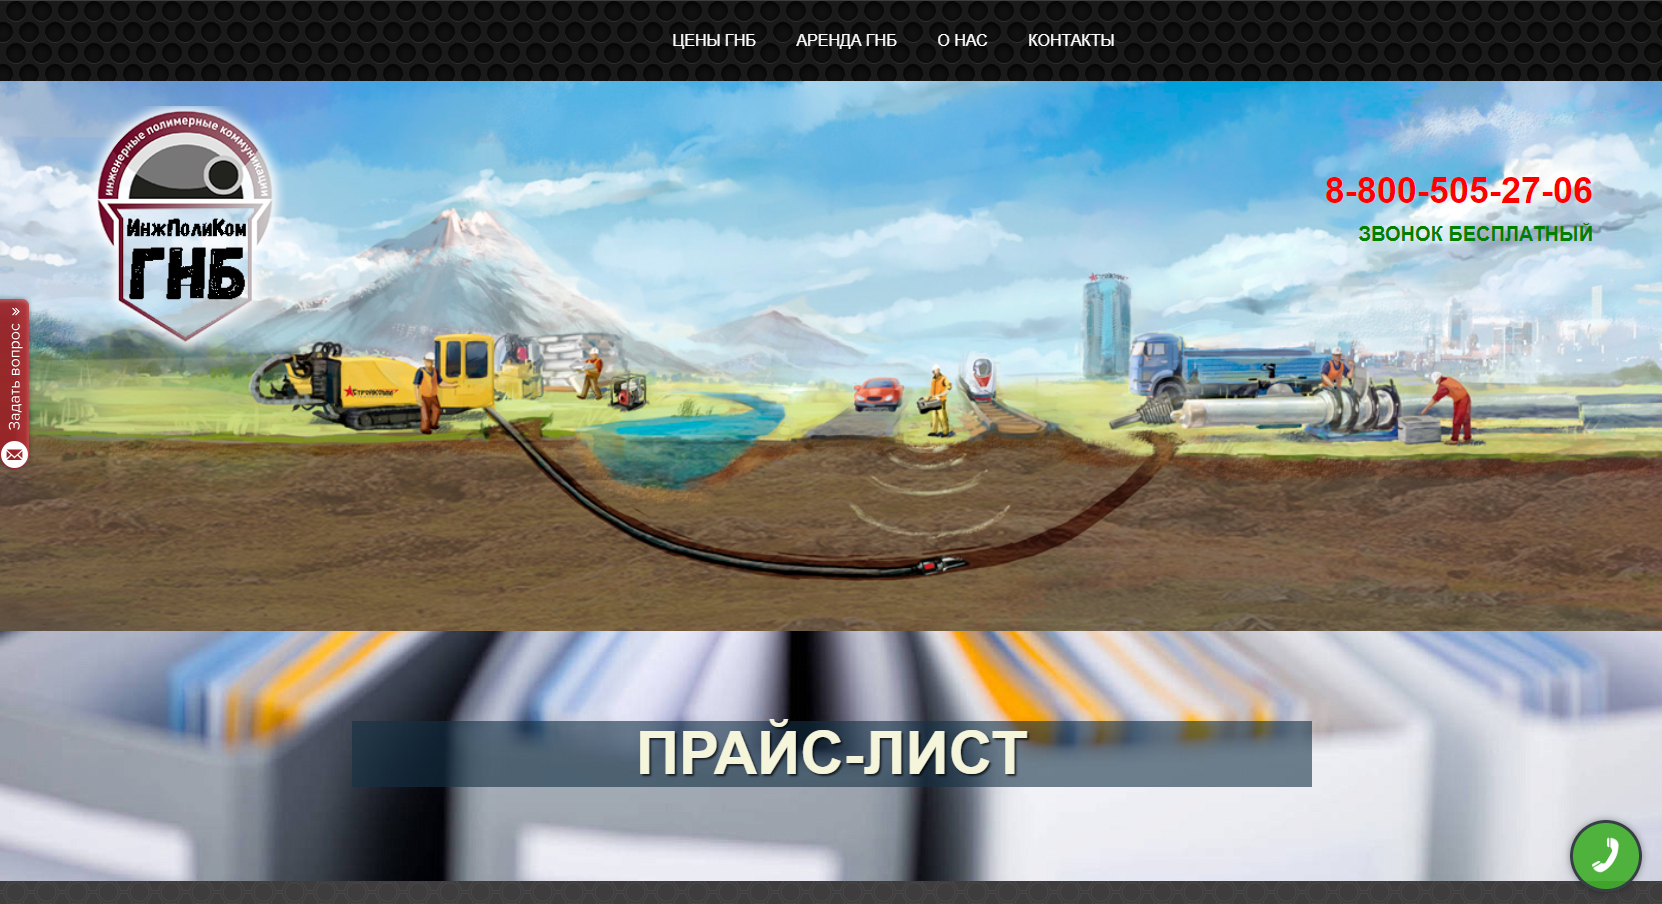 Screenshot сайта ООО ИнжПолиКом ГНБ